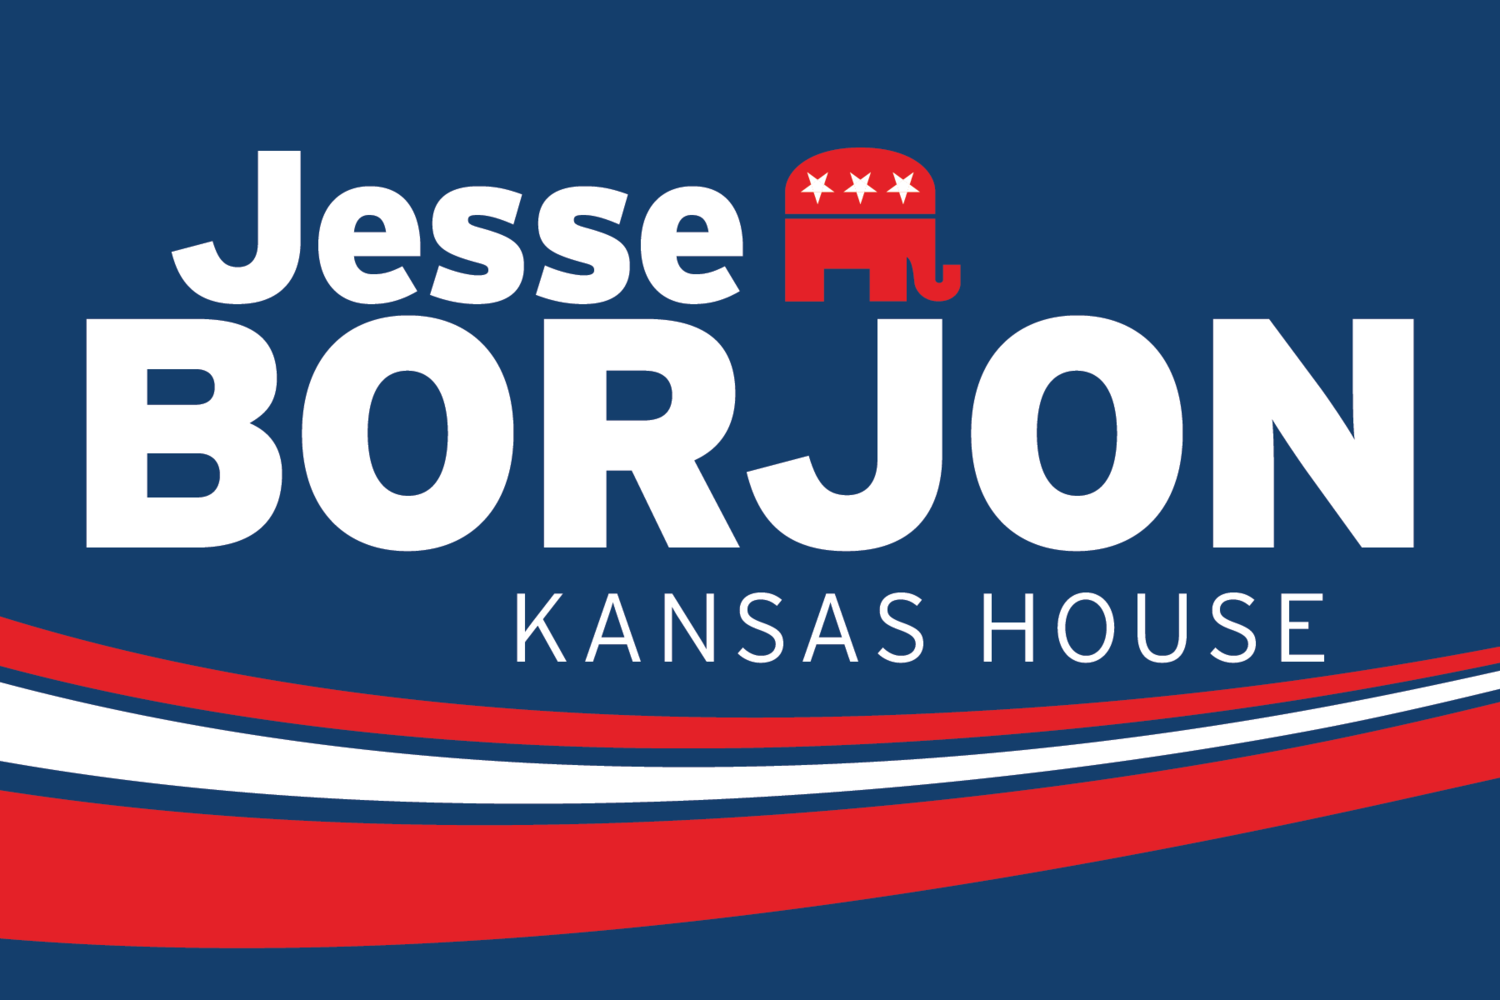 Vote Jesse Borjon for Kansas House